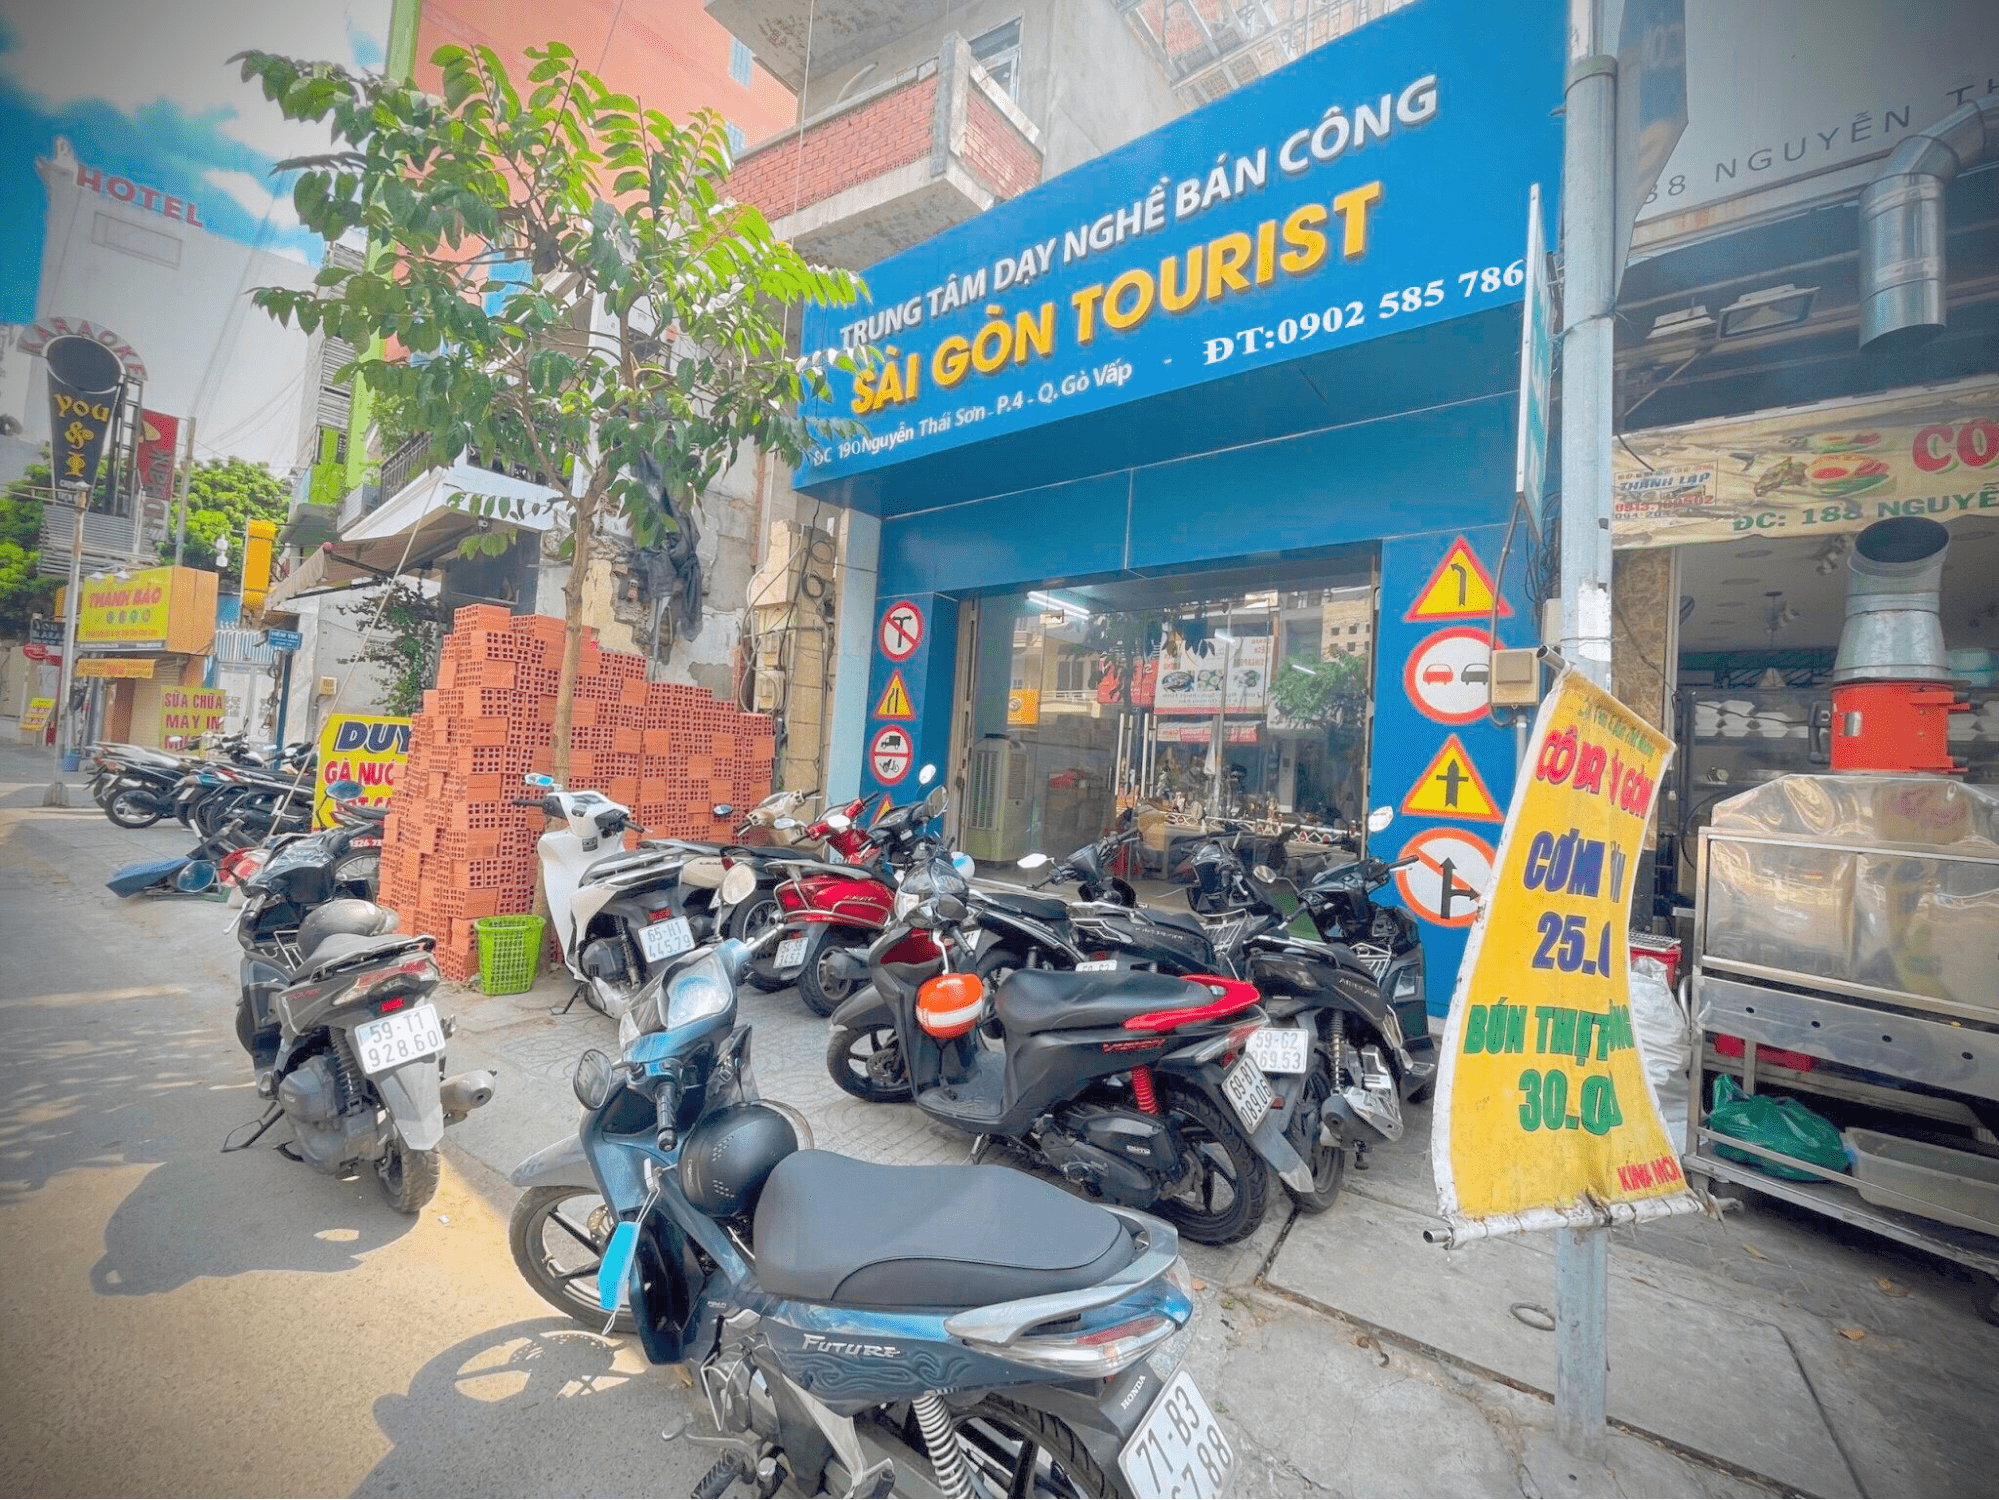 Trung Tâm Dạy Lái Xe Sài Gòn Tourist